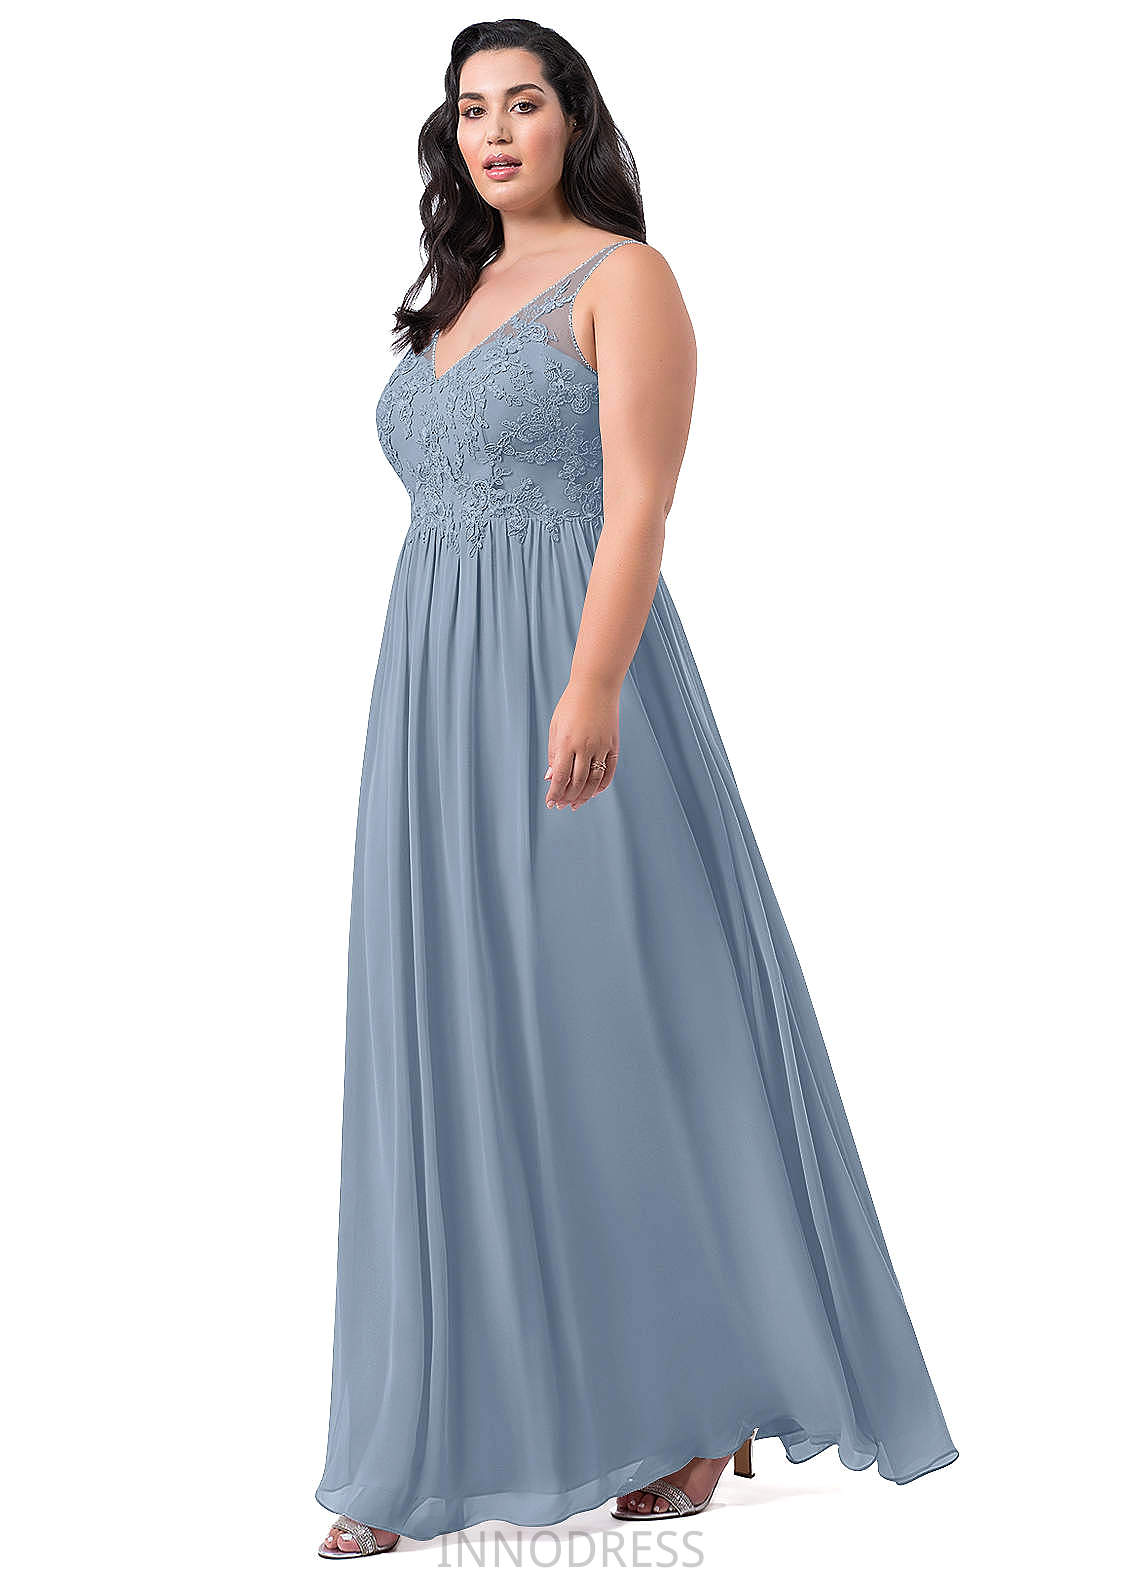 Katie Trumpet/Mermaid Natural Waist Spaghetti Staps Sleeveless Floor Length Bridesmaid Dresses